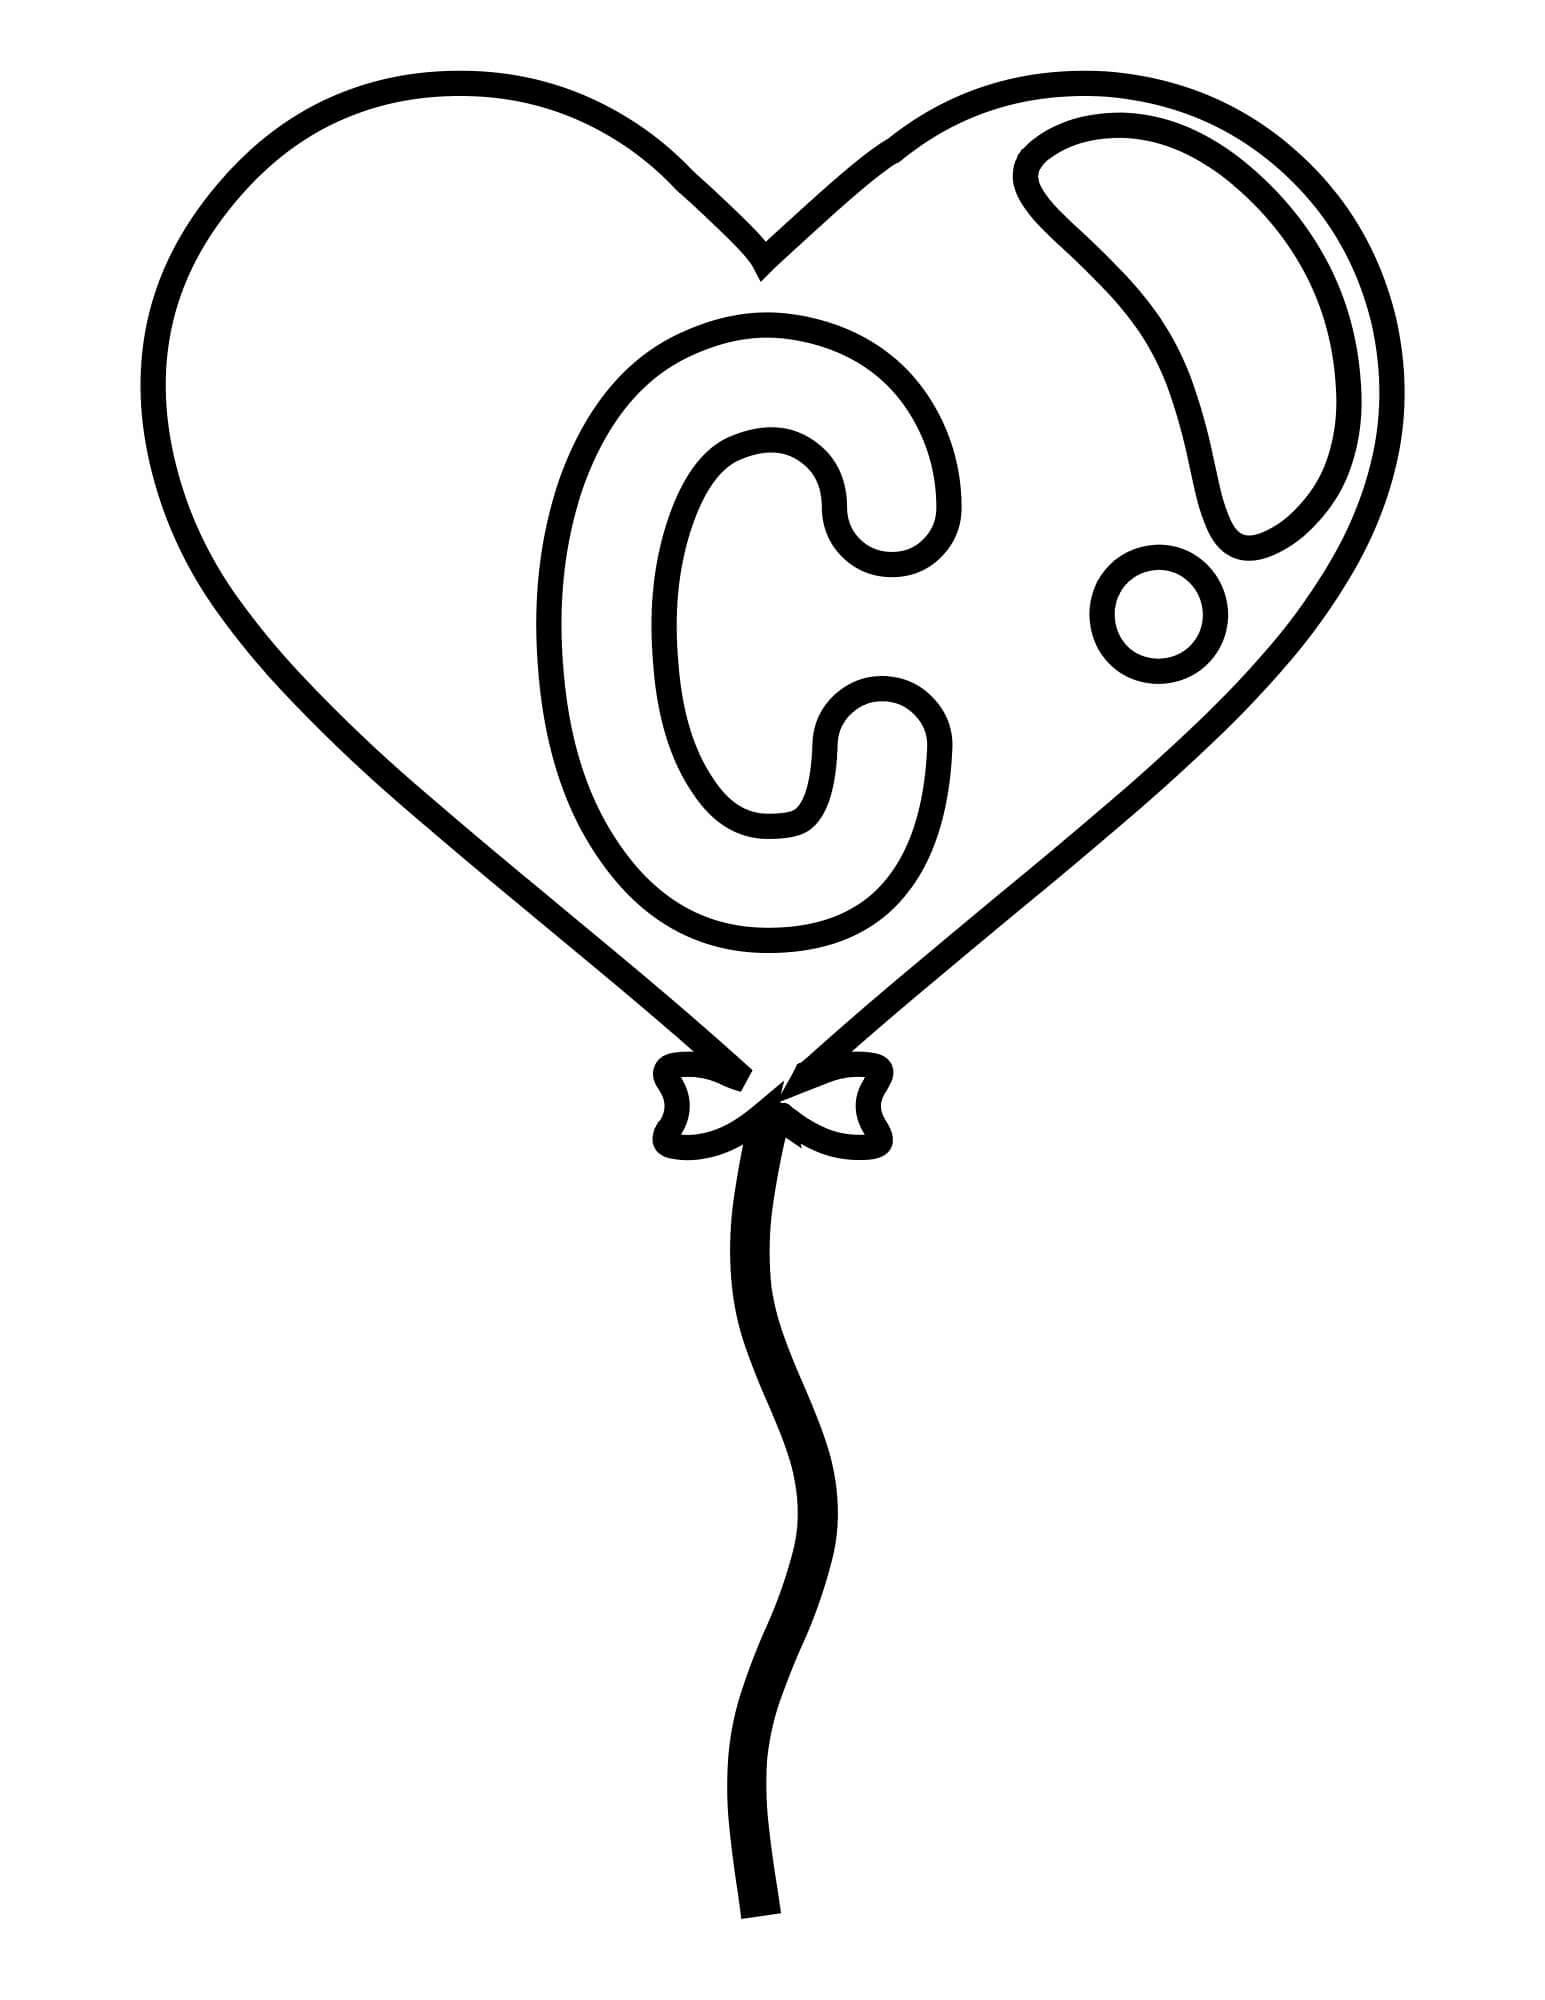 Letra C Fácil no Balão de Coração para colorir